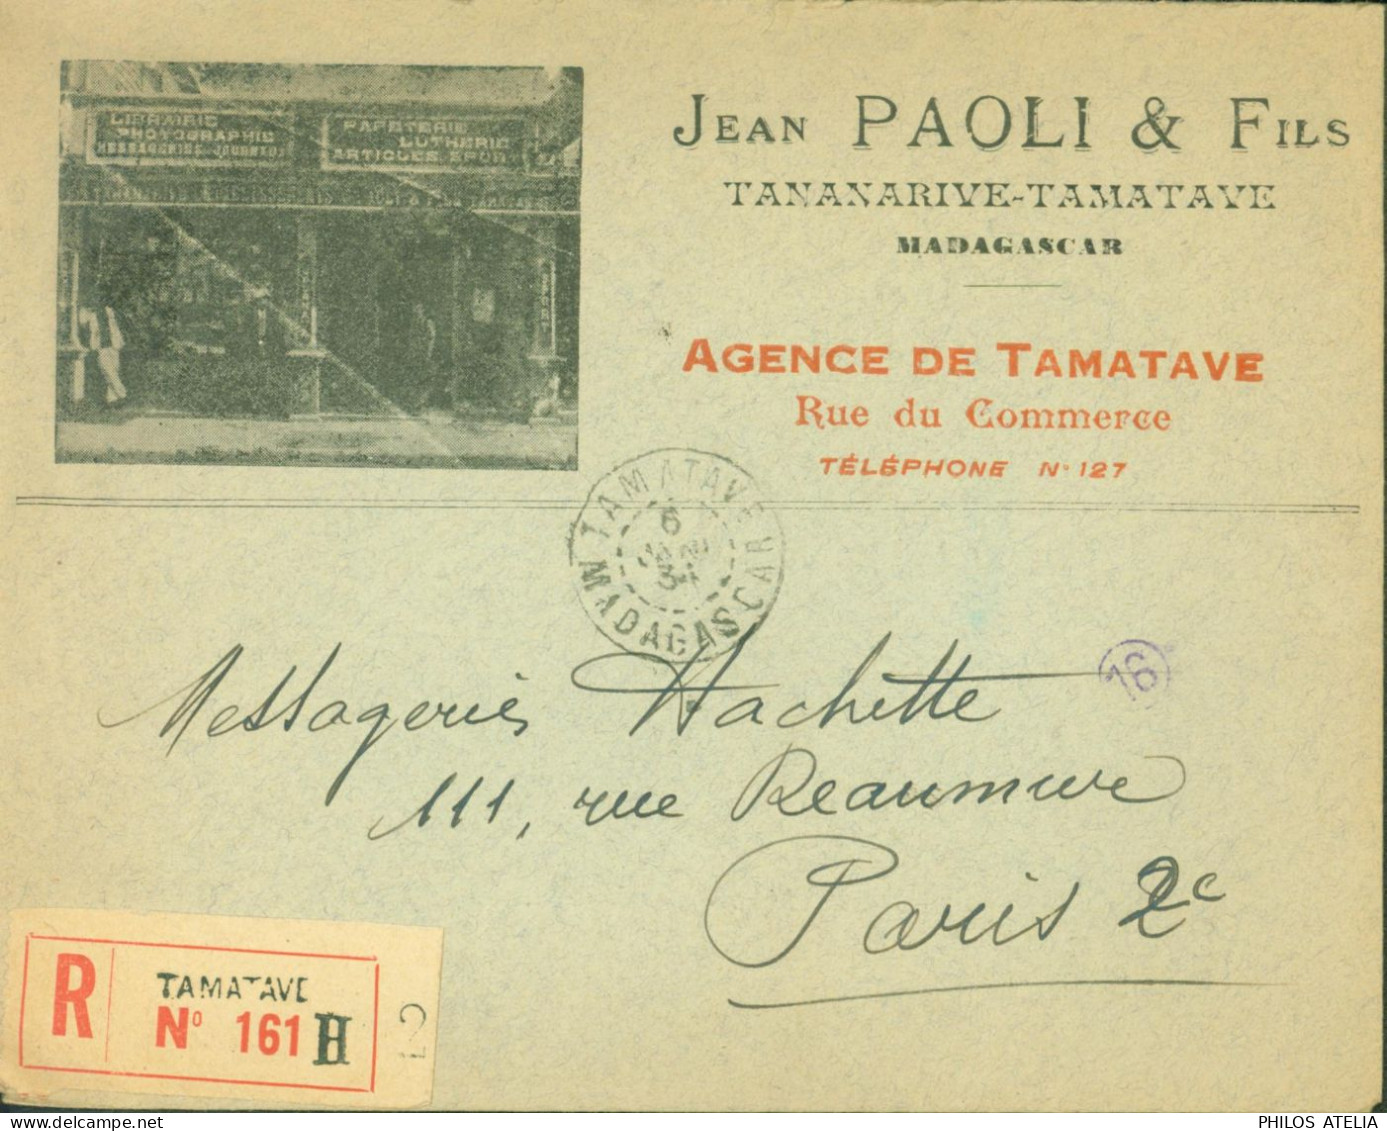 Enveloppe Publicitaire Illustrée Jean Paoli Agence De Tamatave Recommandé YT N°134 + 184 X3 CAD Tamatave 6 1 34 - Covers & Documents